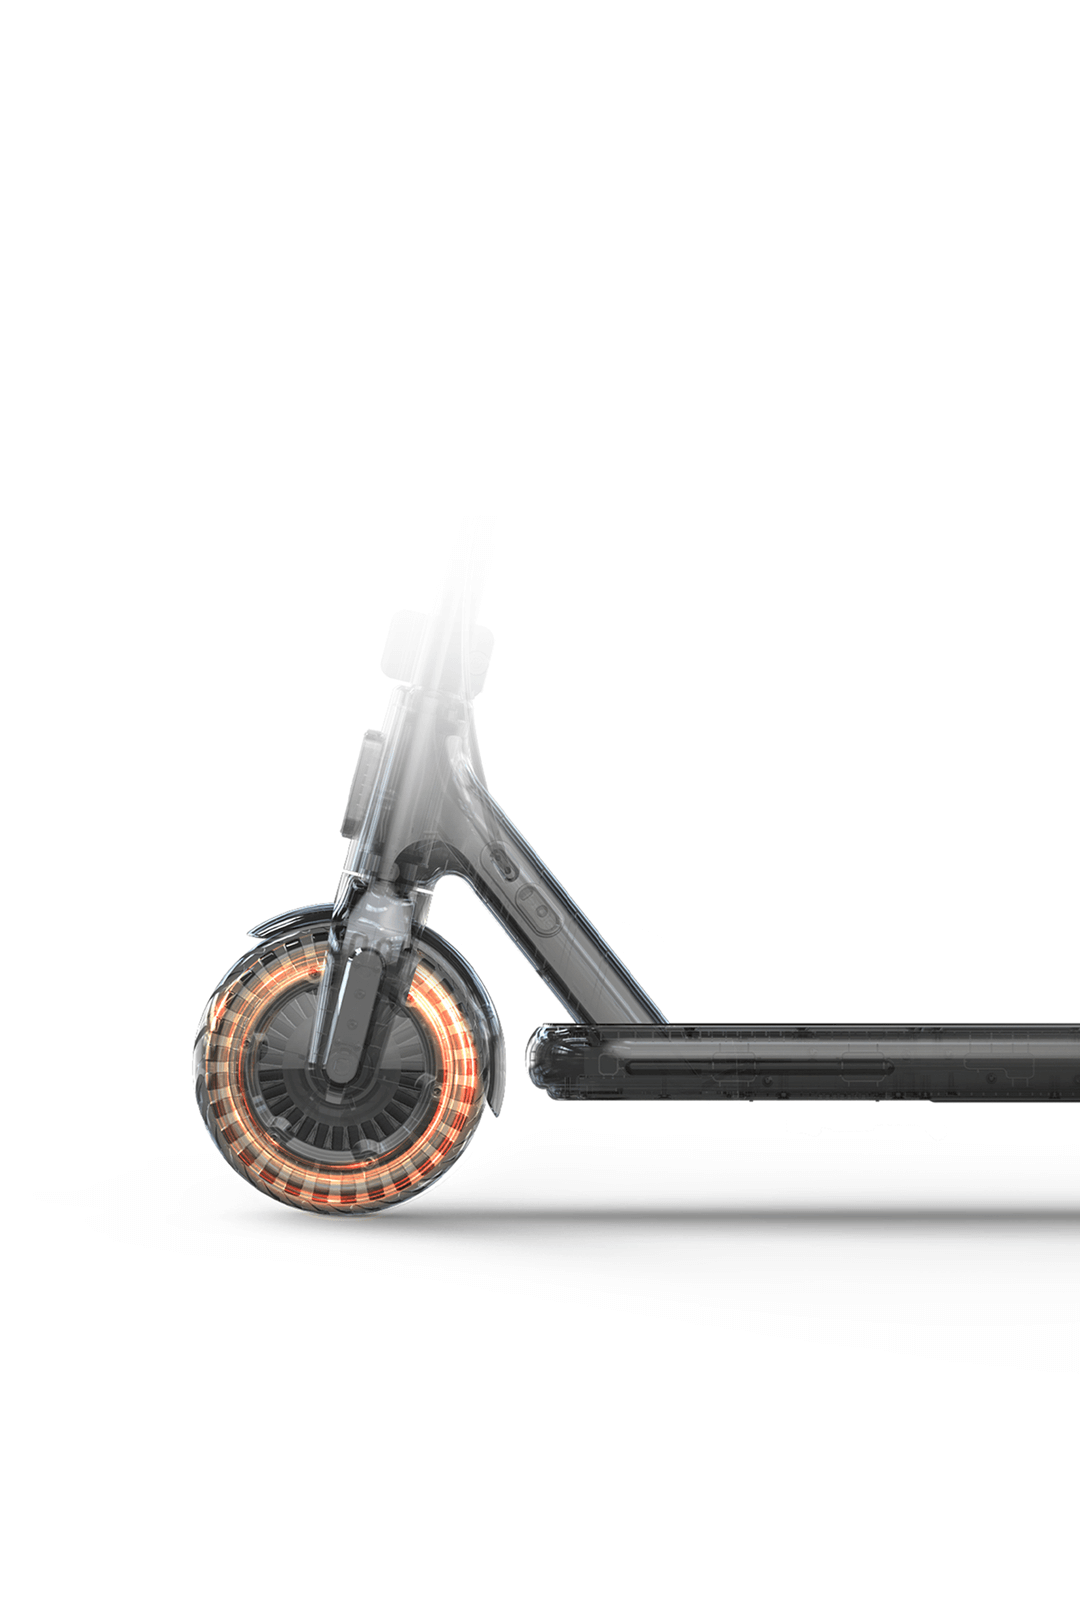 xiaomi-electric-scooter-4-go - Xiaomi España